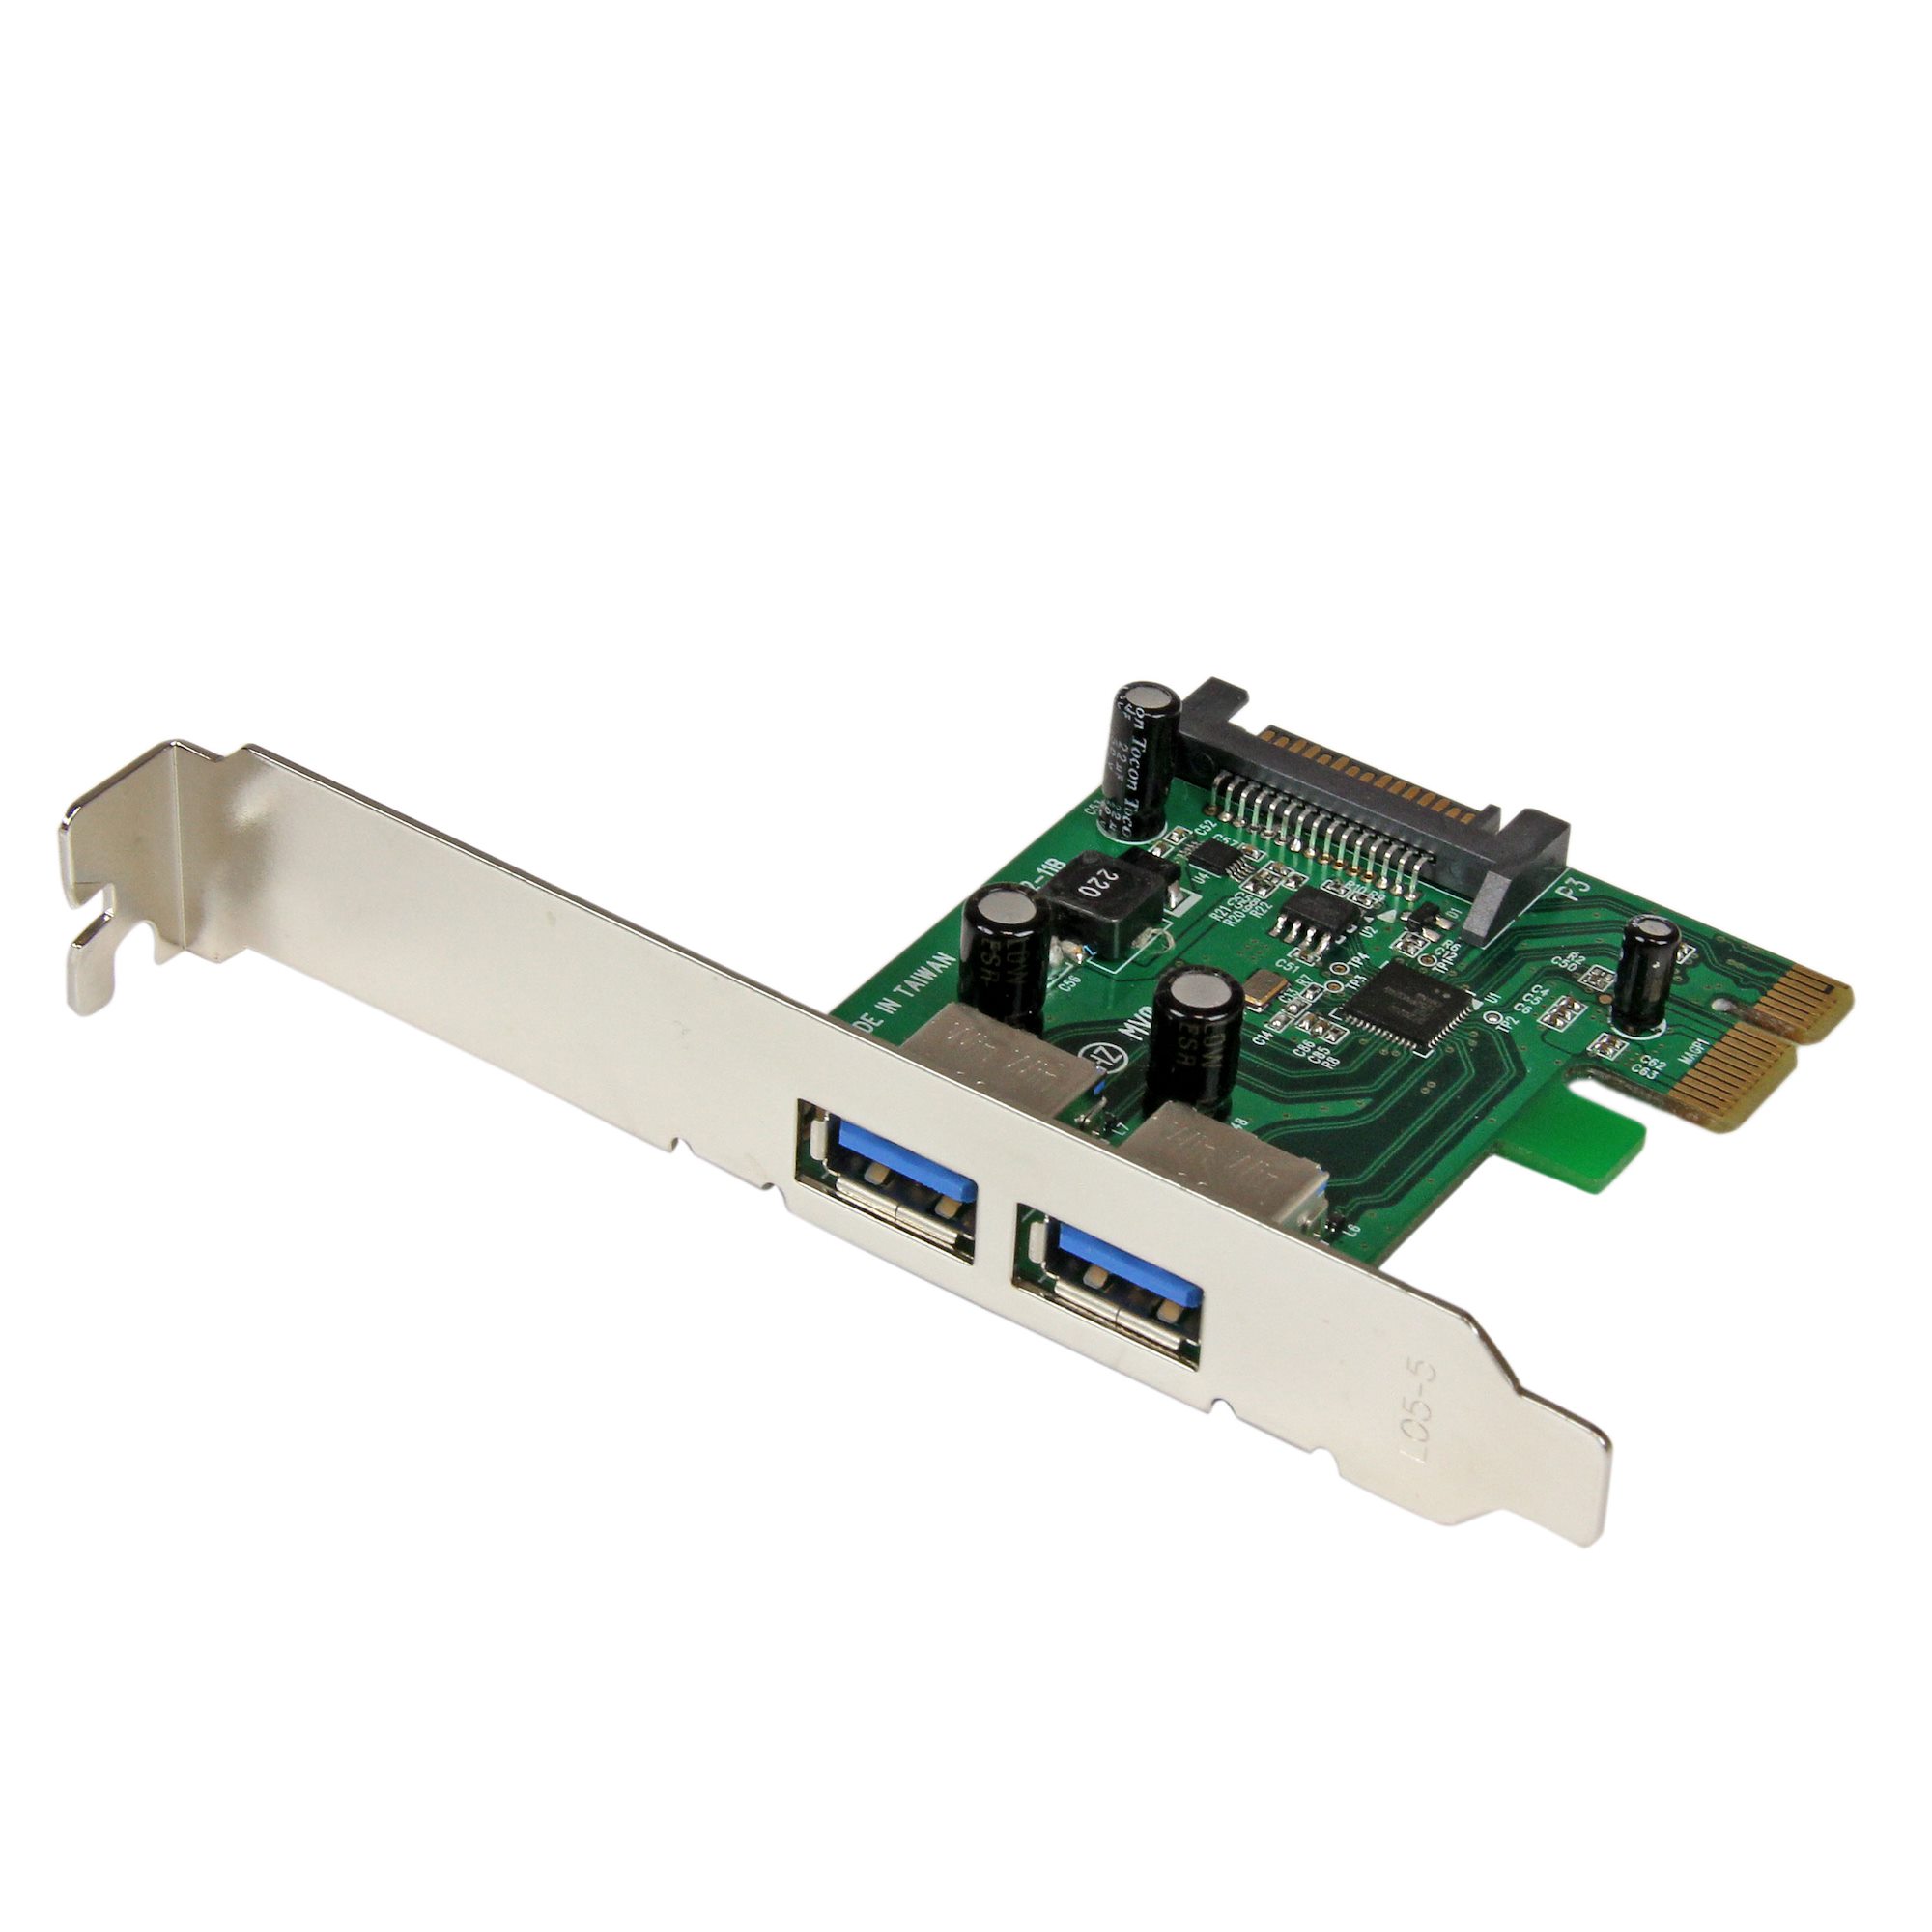 1 Internal 1 External StarTech.com 2 port PCI Express SuperSpeed USB 3.0 Card with UASP Support 